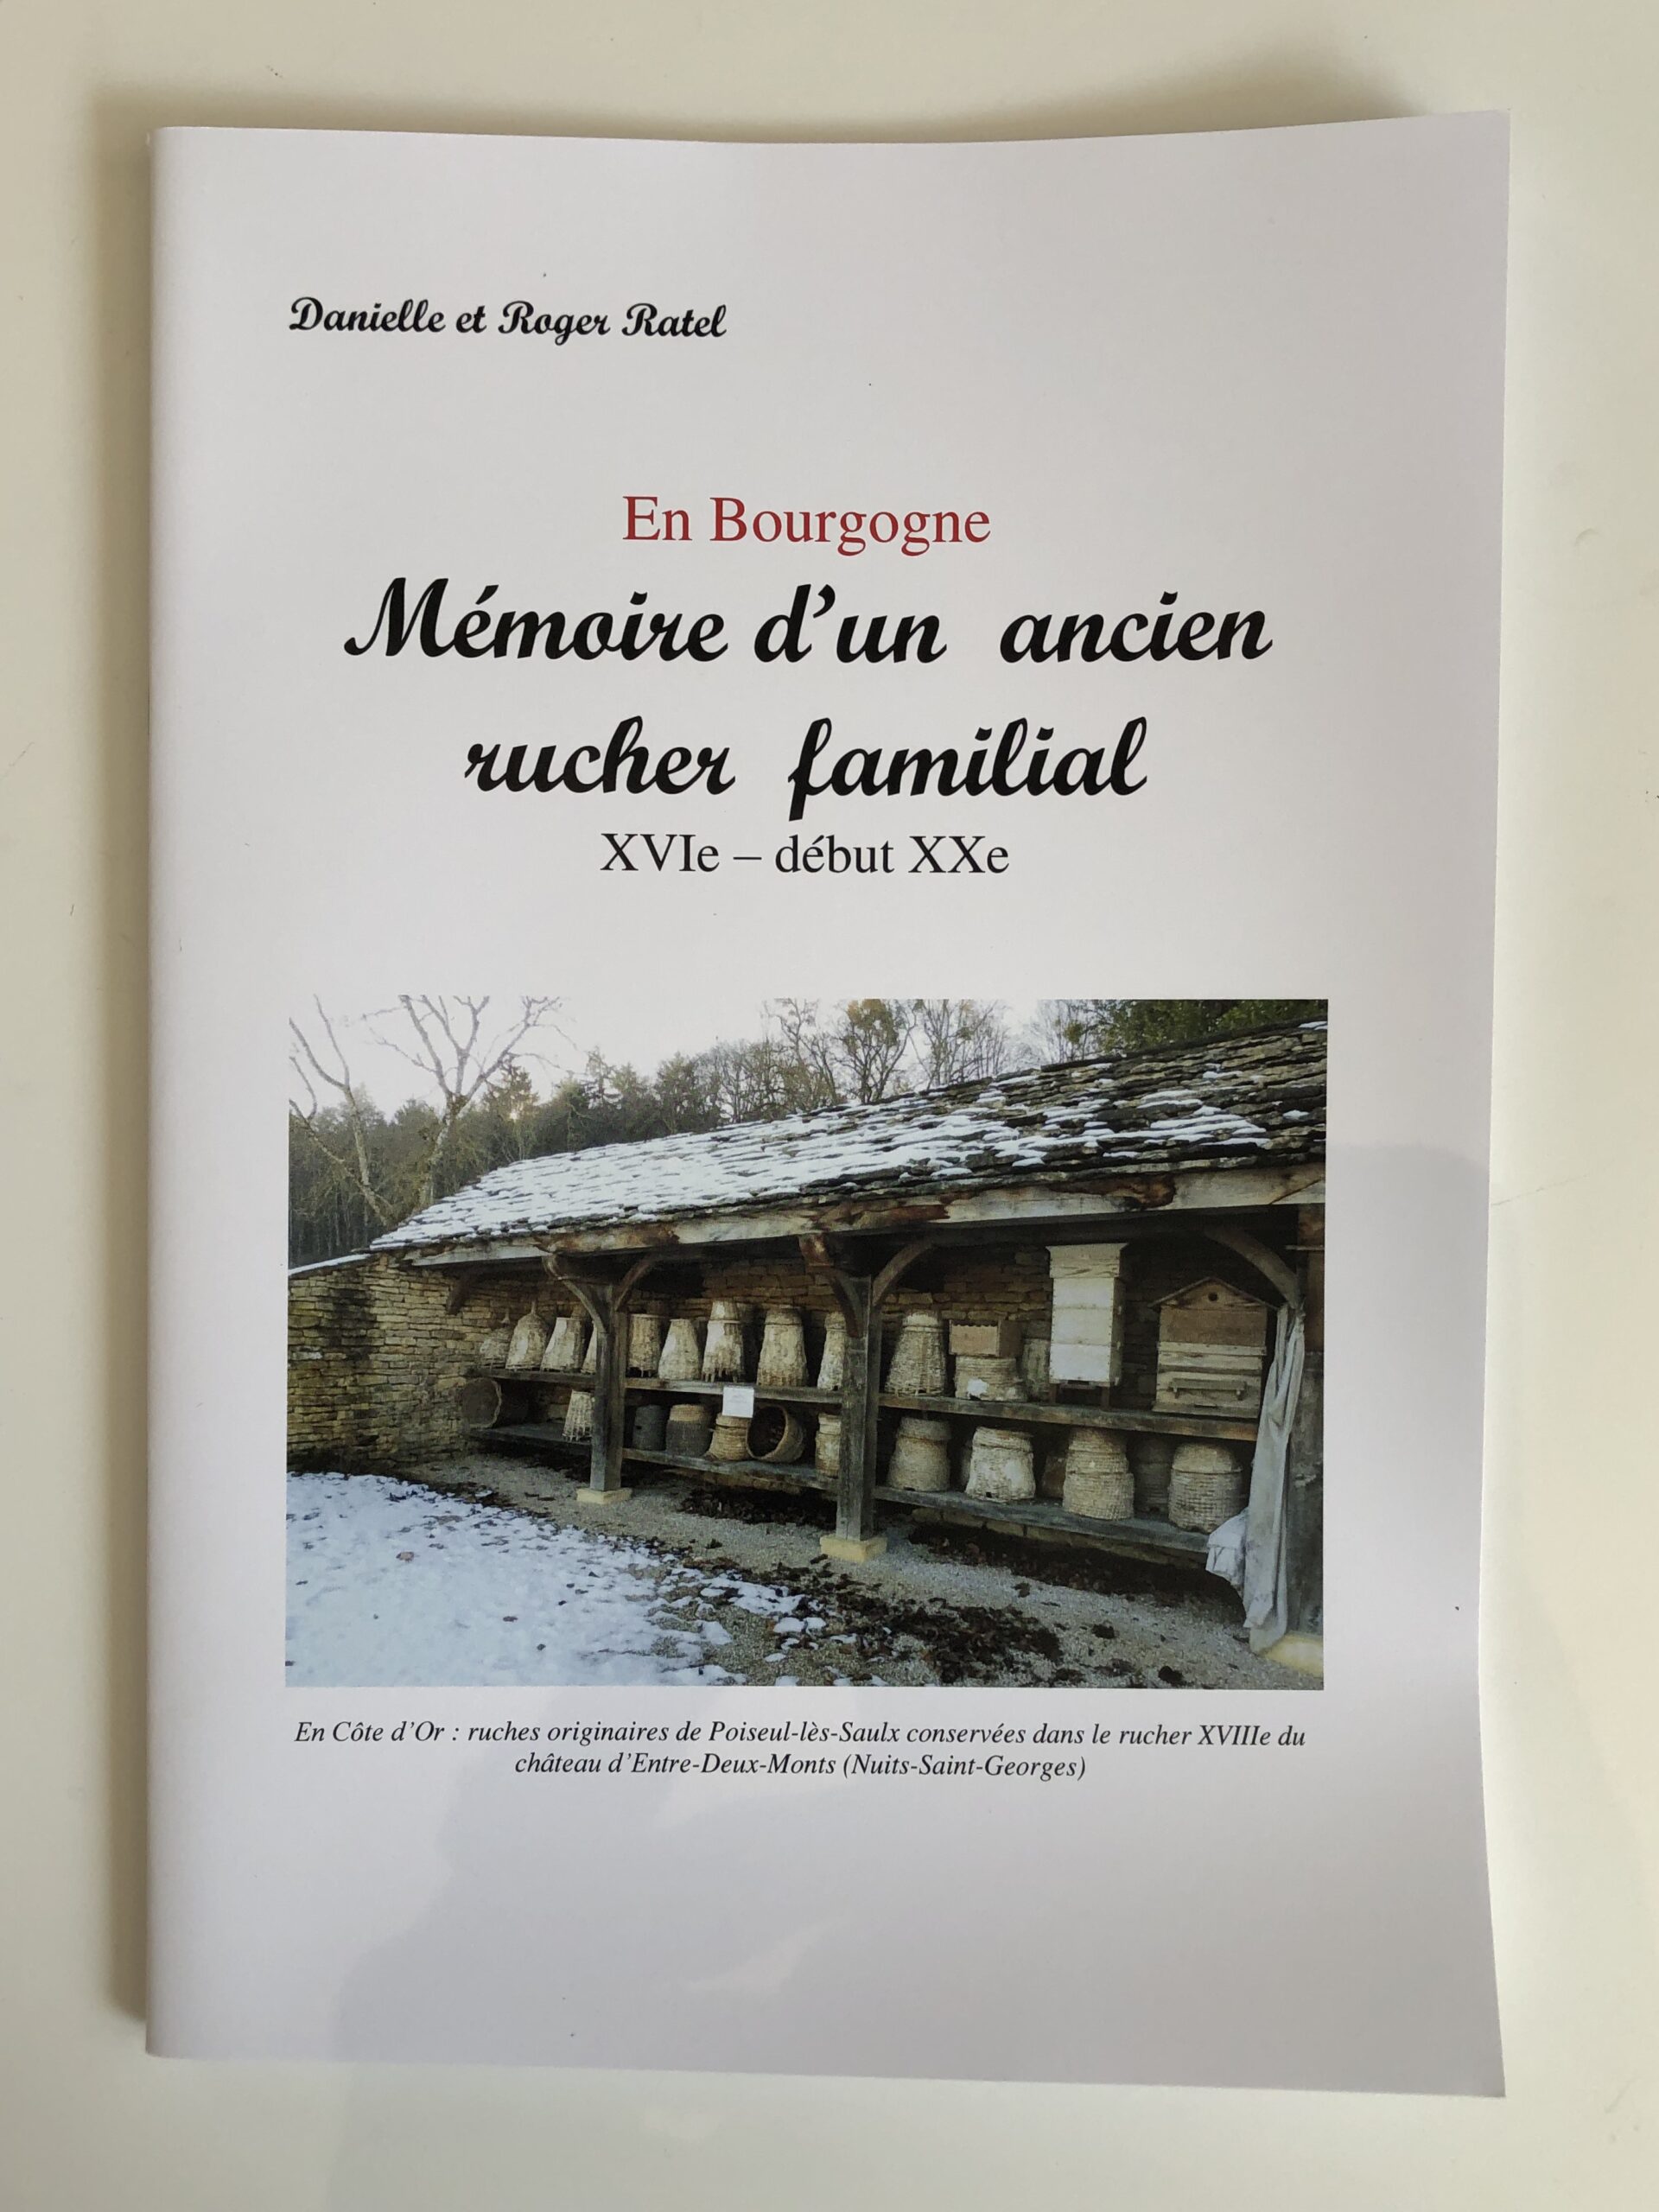 Livre “En Bourgogne, mémoire d’un rucher familial”